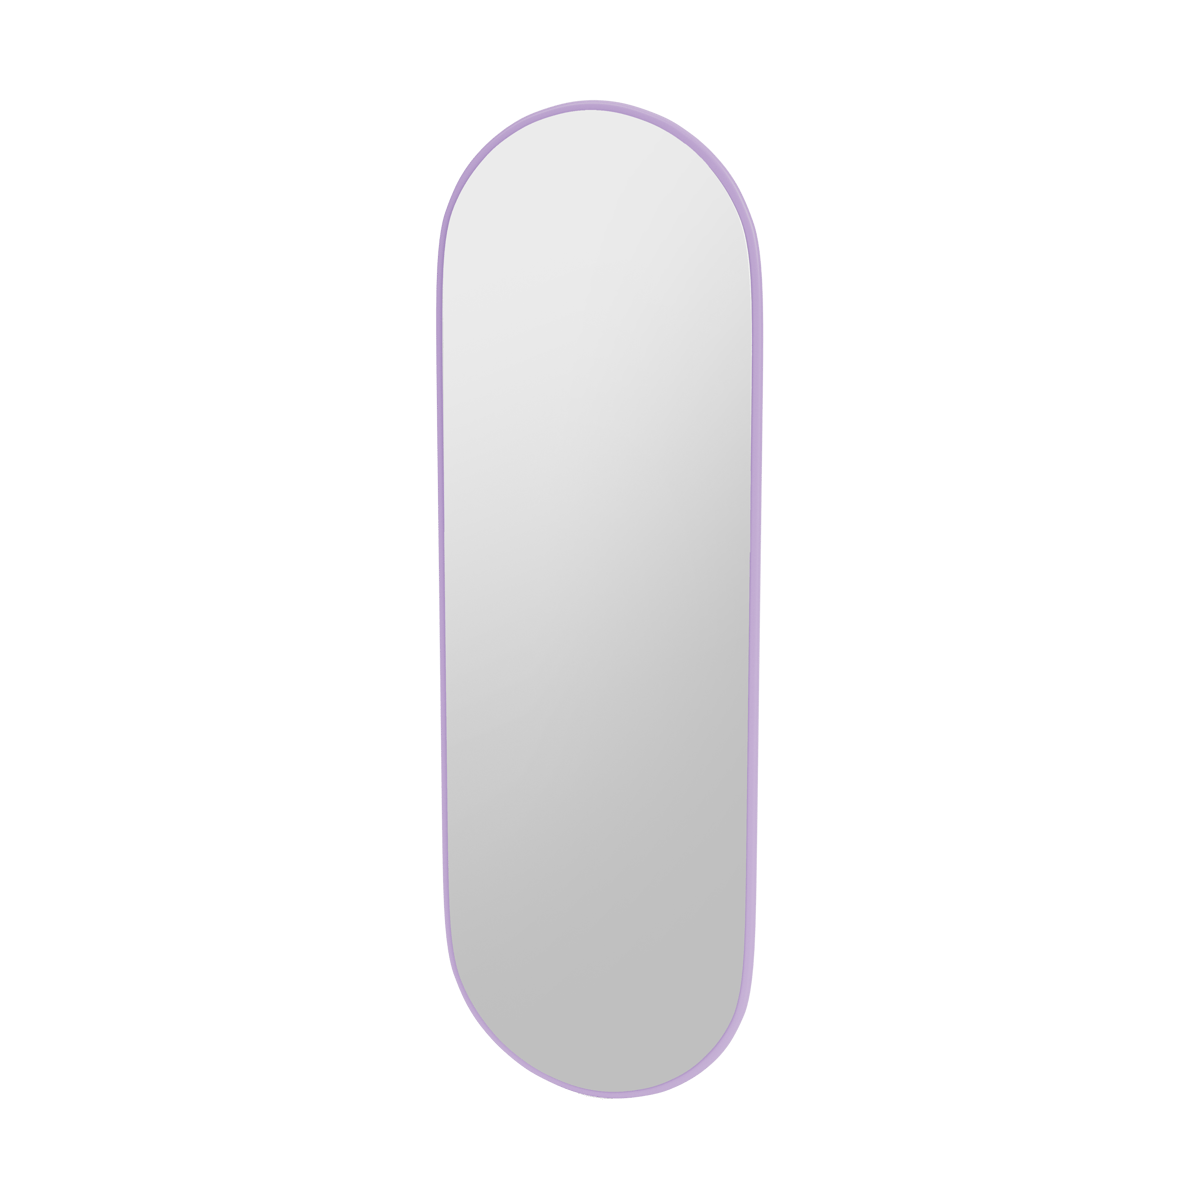 Montana FIGUUR Mirror Spiegel - SP824R Iris